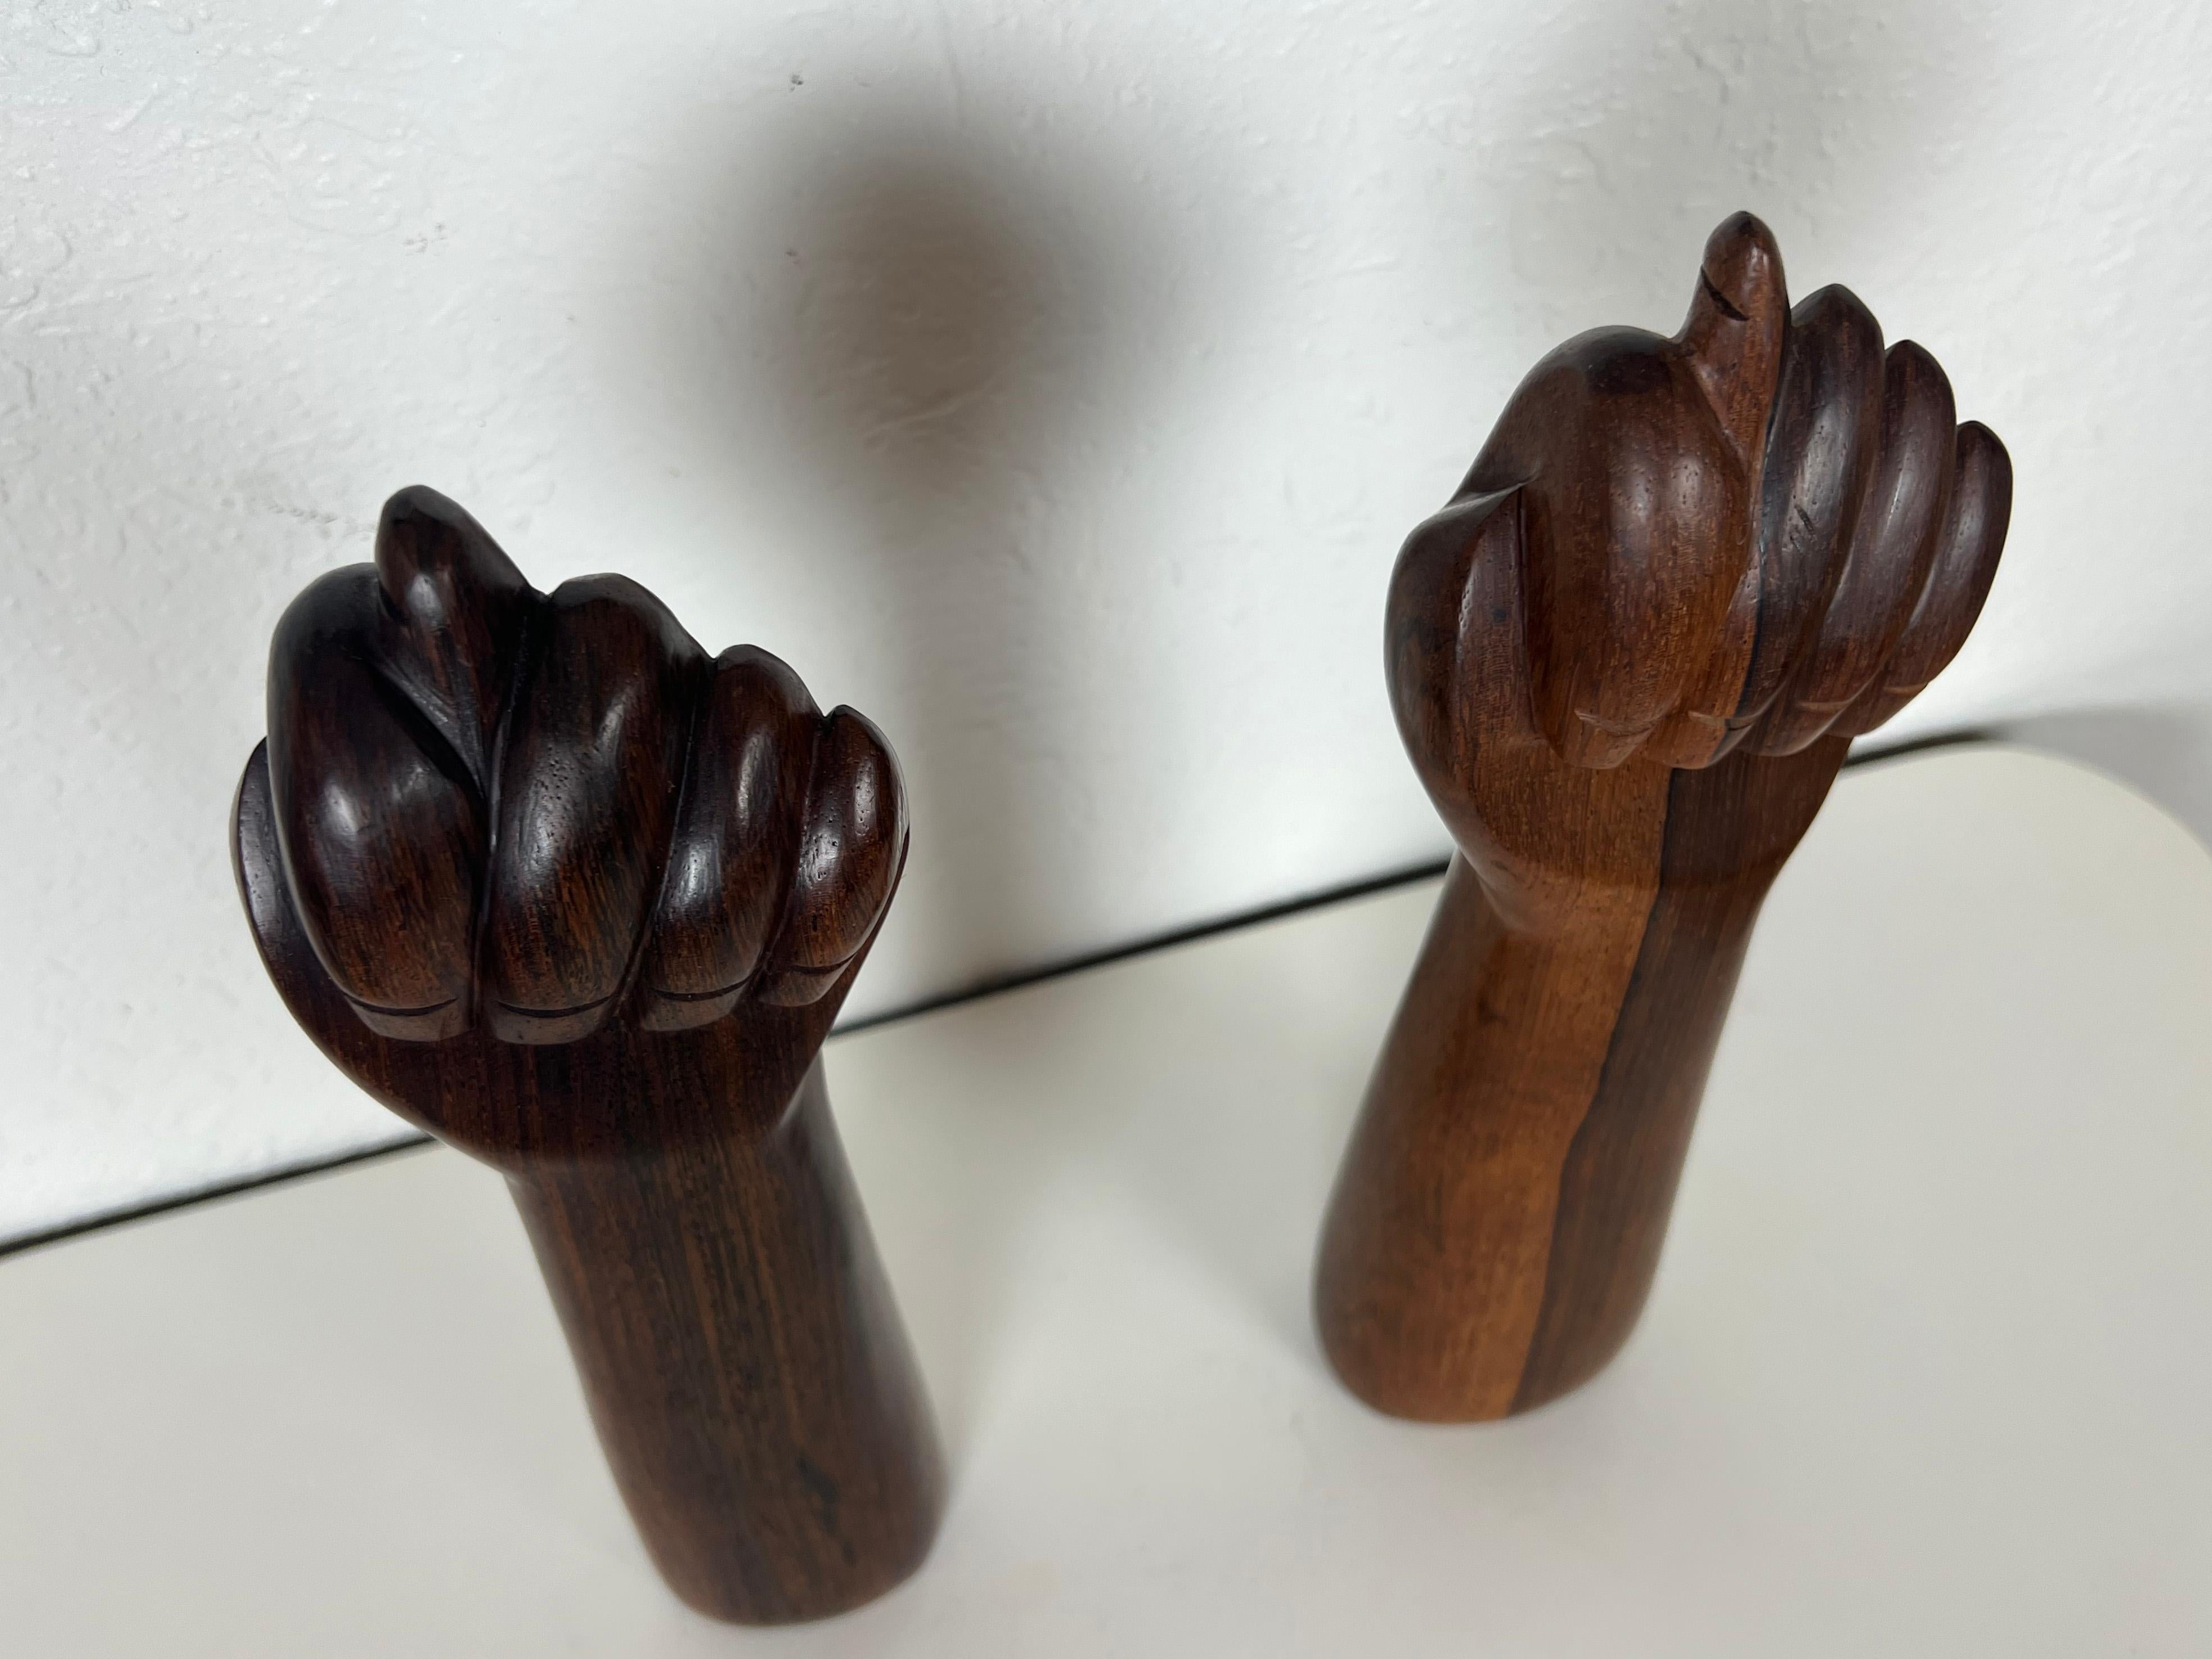 Brazilian Jacaranda Rosewood Hand Sculptures by Jac-Arte - a Pair 2